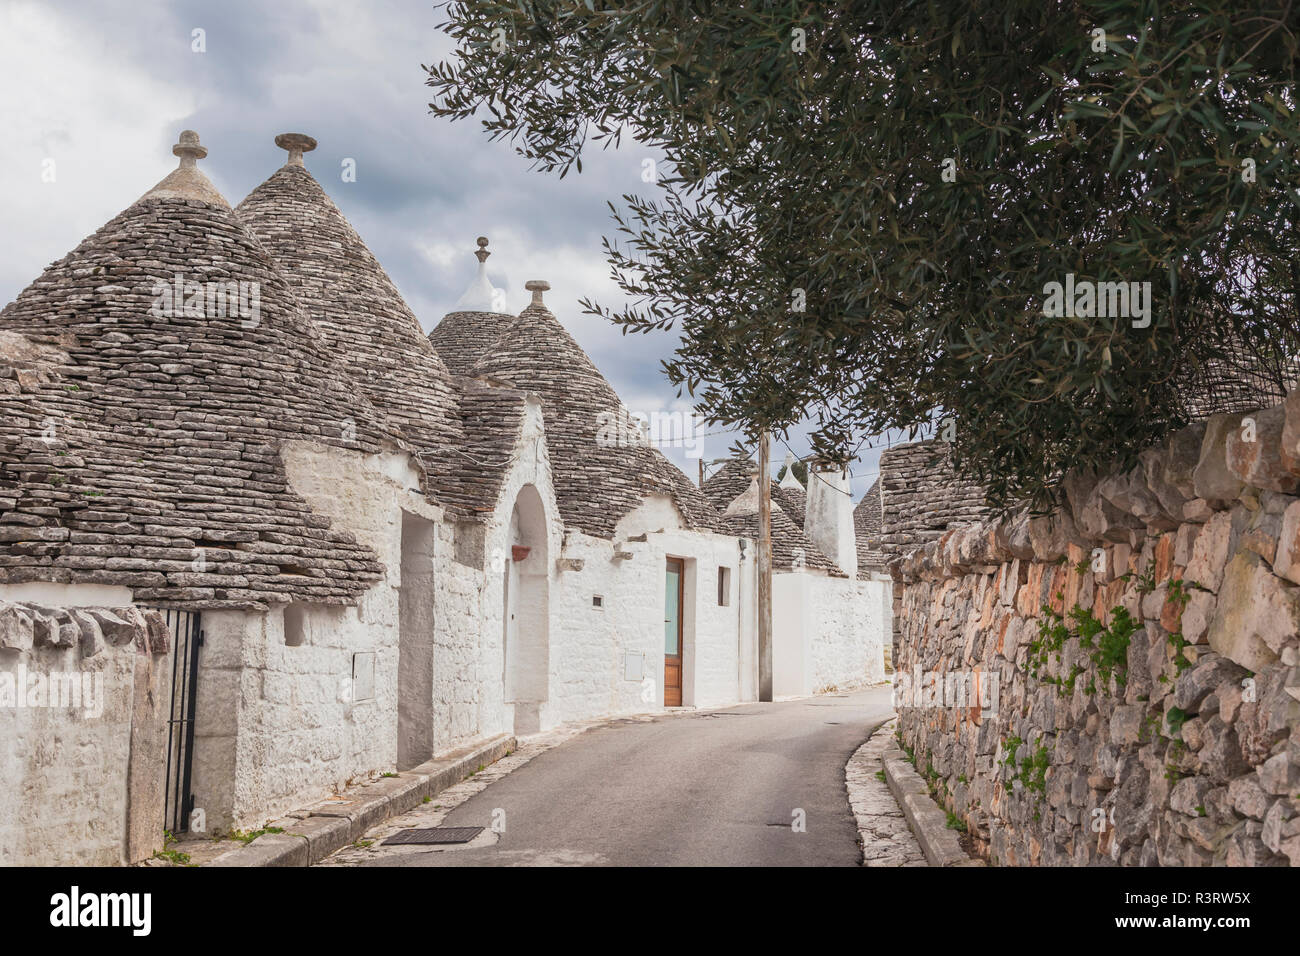 Italien, Apulien, Alberobello, Blick auf die Gasse mit typischen Trulli. Stockfoto